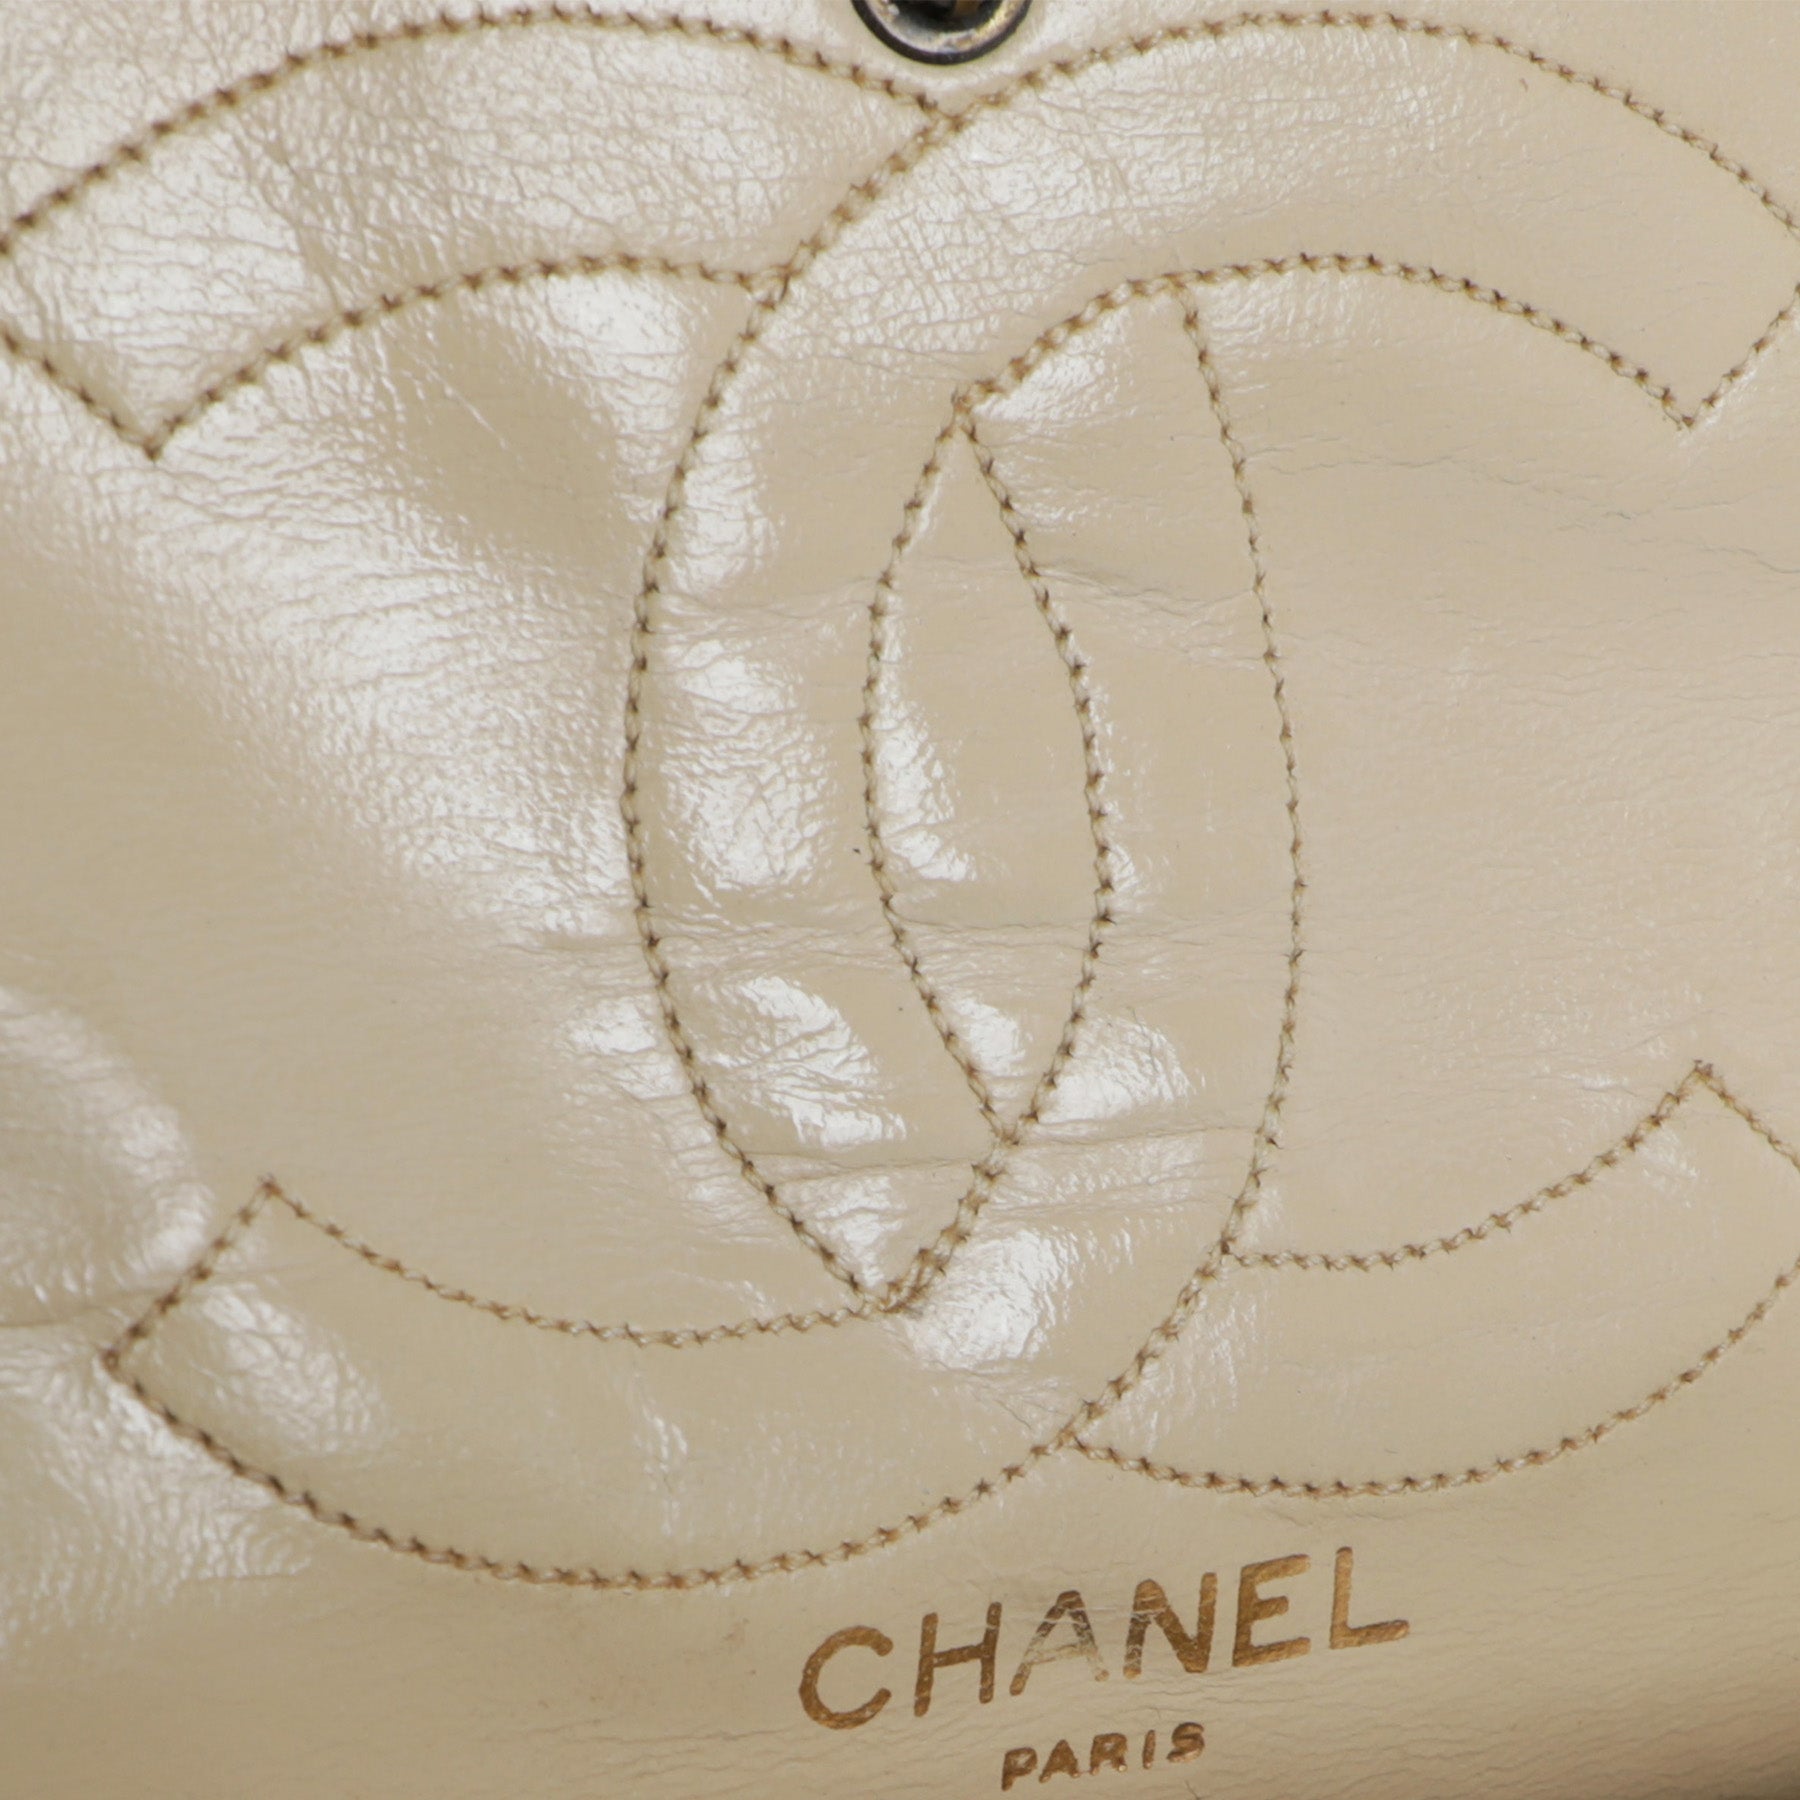 ON HOLD Vintage CHANEL bag the original 1950's 2 55 quilted jersey bag  restored original Chanel handbag bag by thekaliman